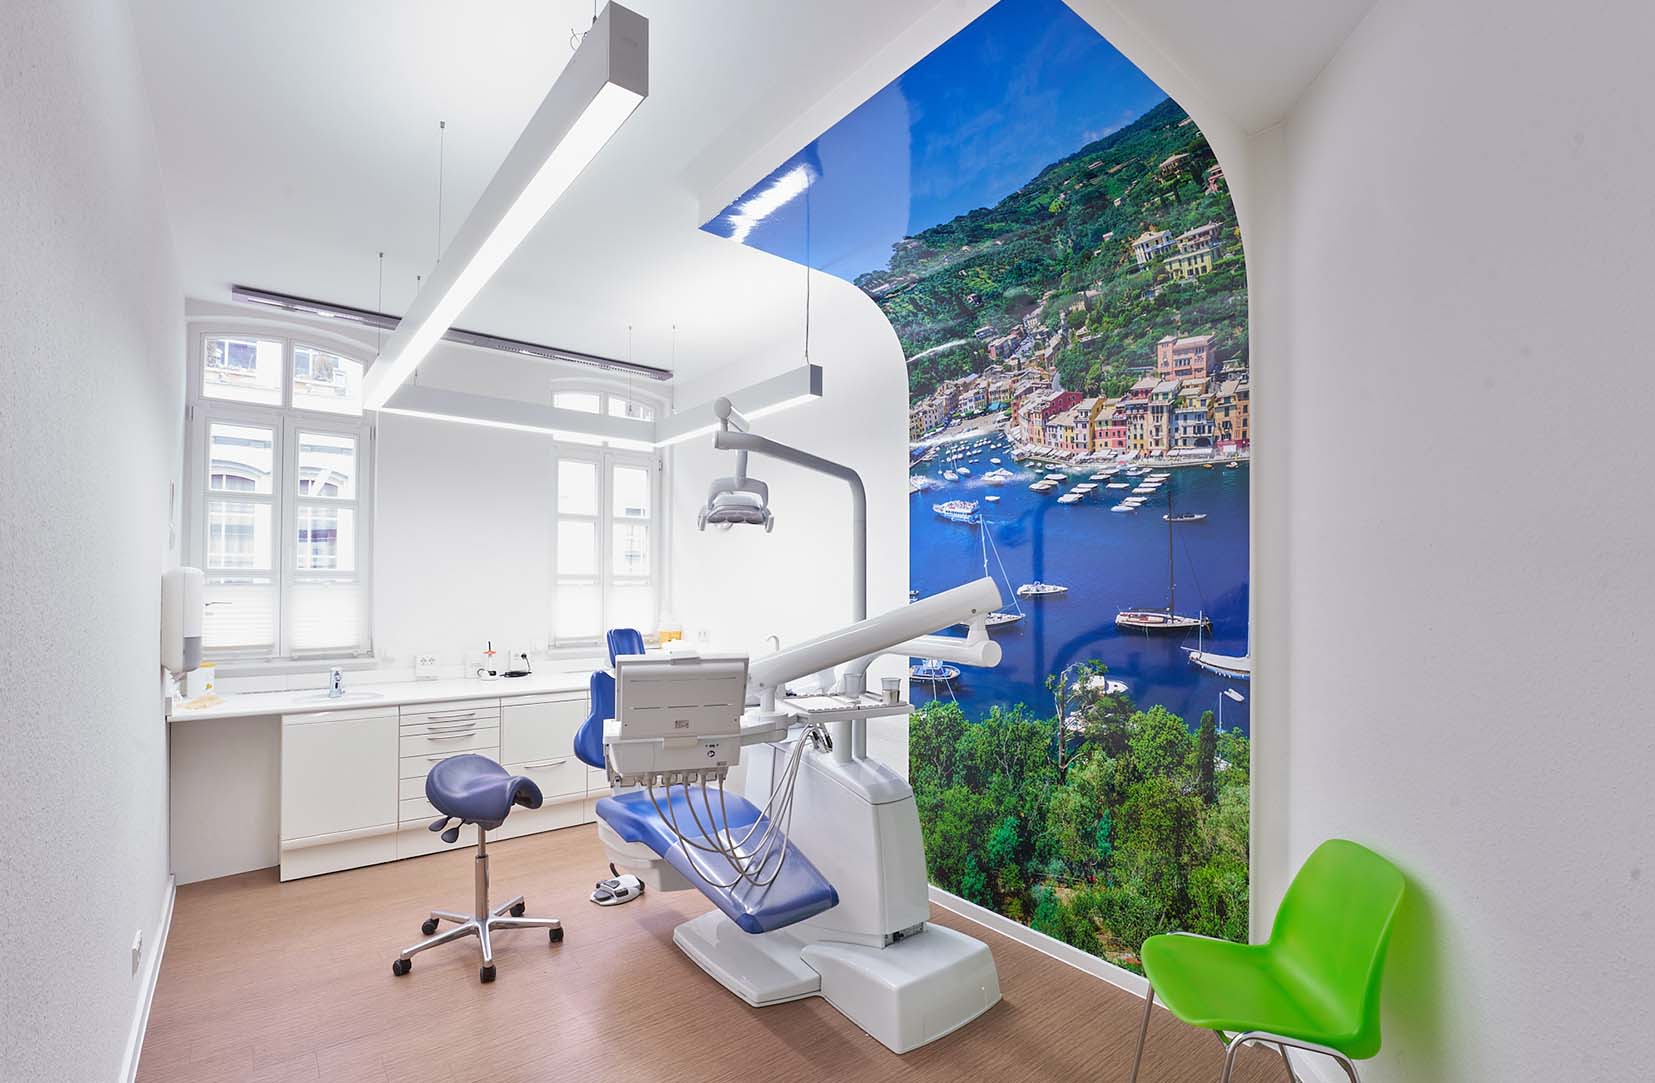 Blick in den Behandlungsraum der Zahnarztpraxis Holz in Wetzlar. Er ist ganz weiß gehalten und ein überdimensionales Bild eines vermutlich italienischen Orts, welches sich hochkant bis an die Decke erstreckt.